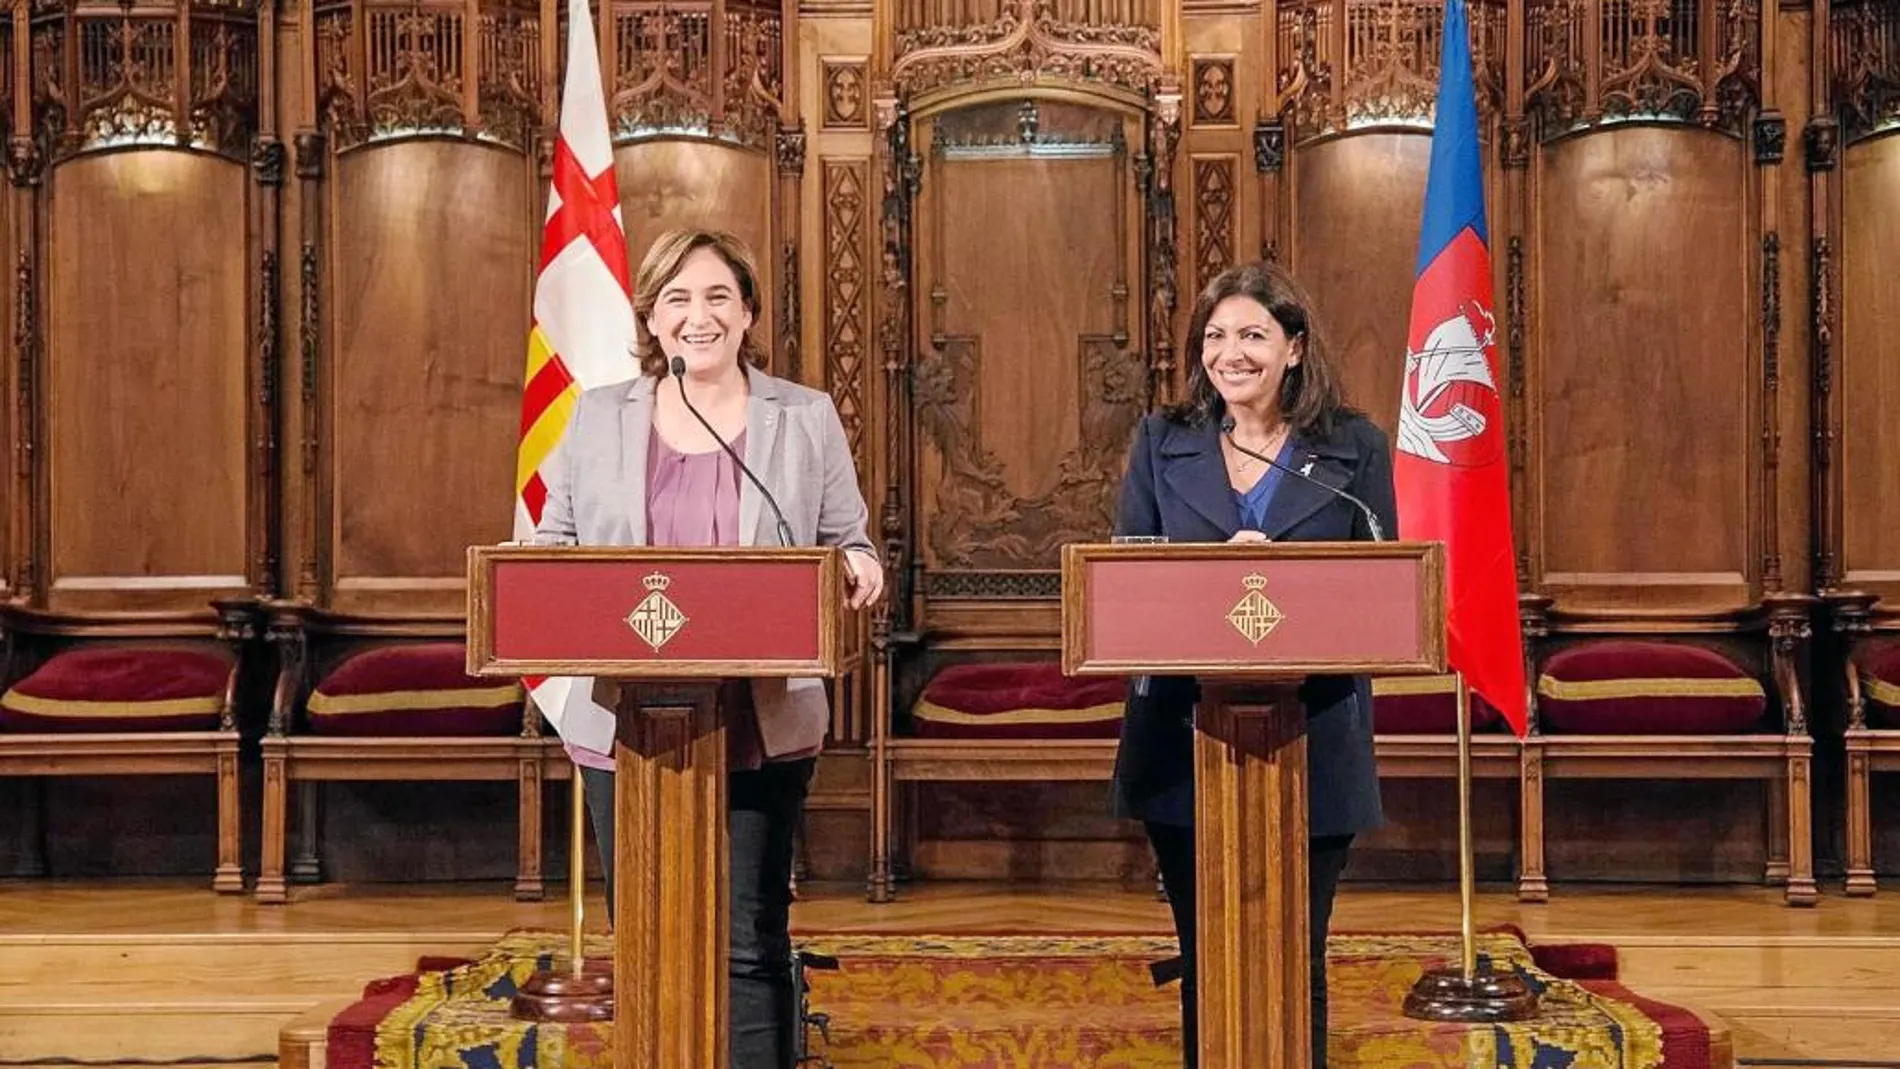 La alcaldesa de París, Anne Hidalgo, y la de Barcelona, Ada Colau, firmaron ayer un pacto de cooperación y amistad entre las dos ciudades con motivo de las fiestas de la Mercè que tienen a la capital francesa como invitada.